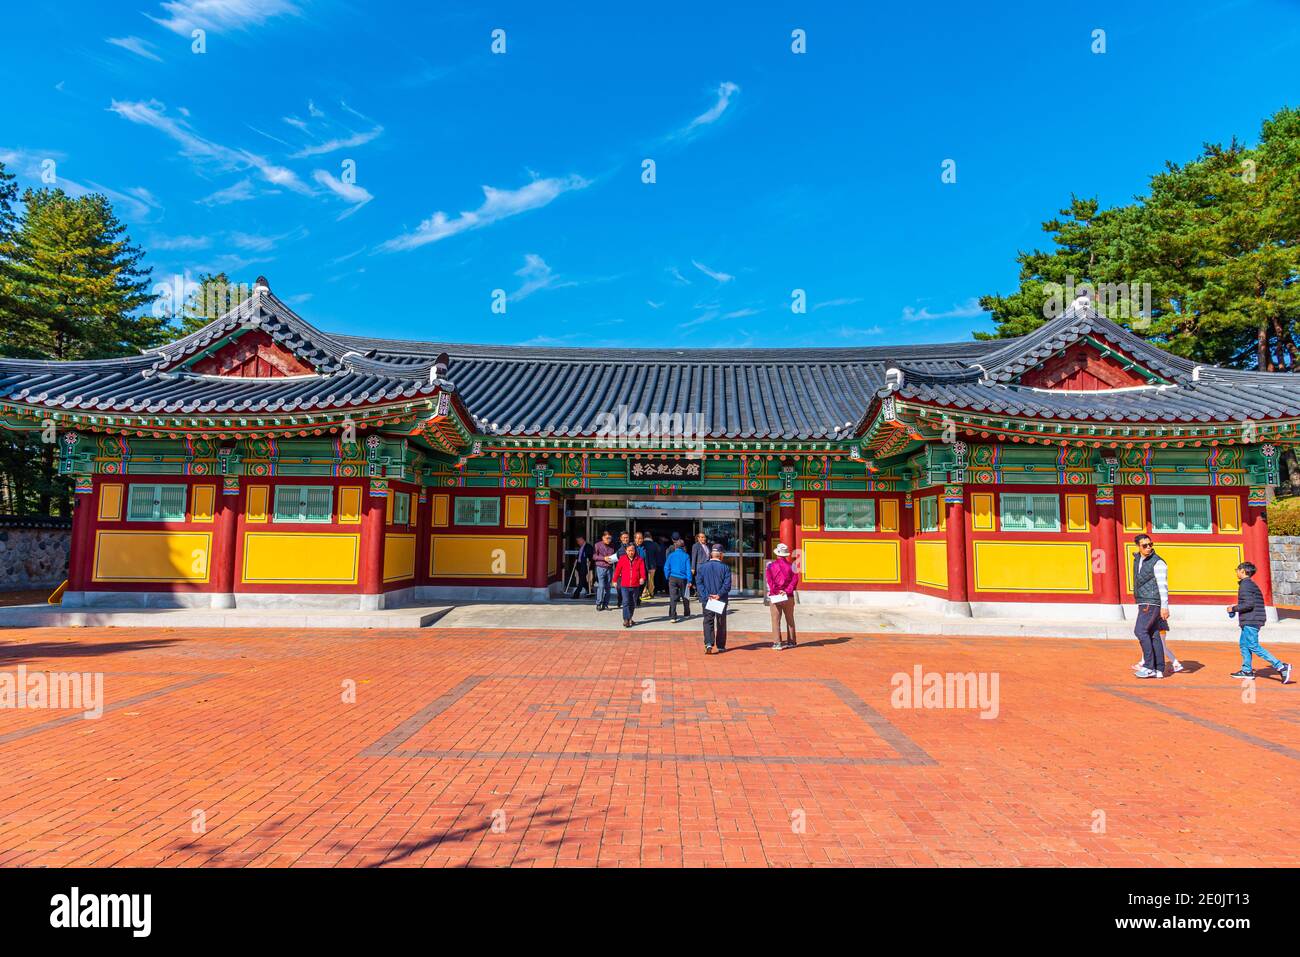 GANGNEUNG, KOREA, OCTOBER 26, 2019: Ojukheon House museum at Gangneung, Republic of Korea Stock Photo